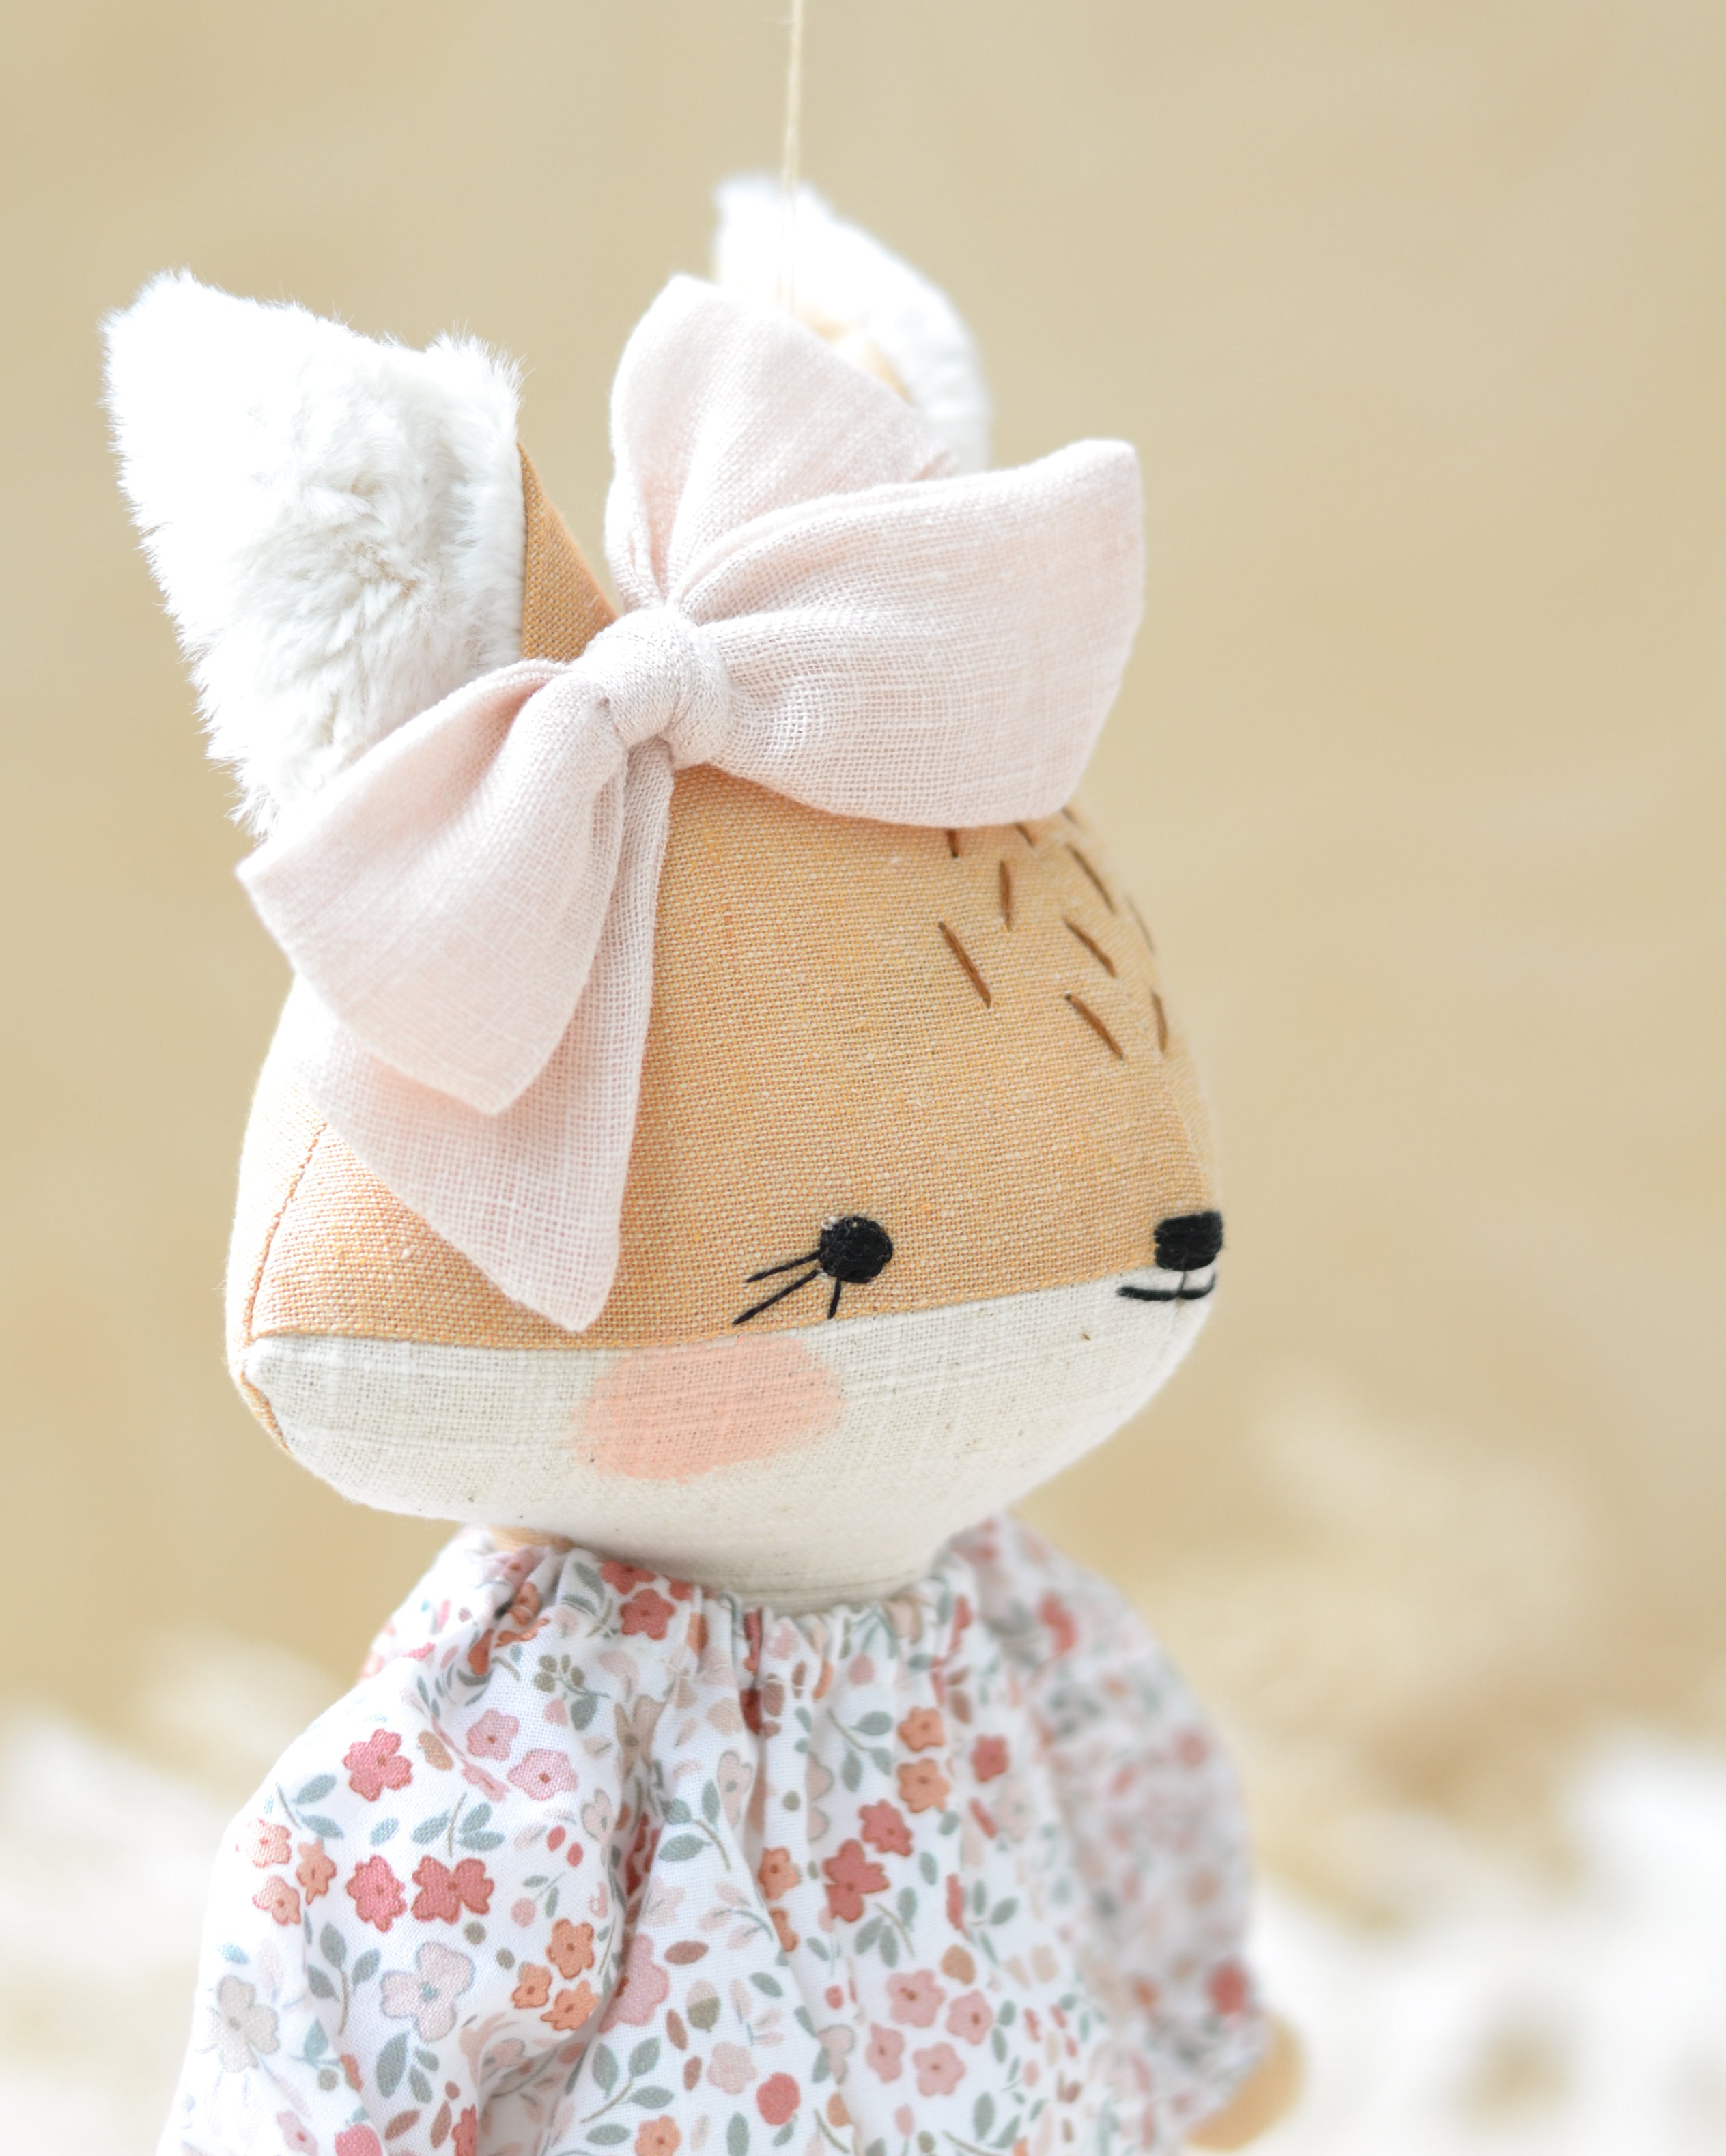 Fox Doll Pink Floral Dress